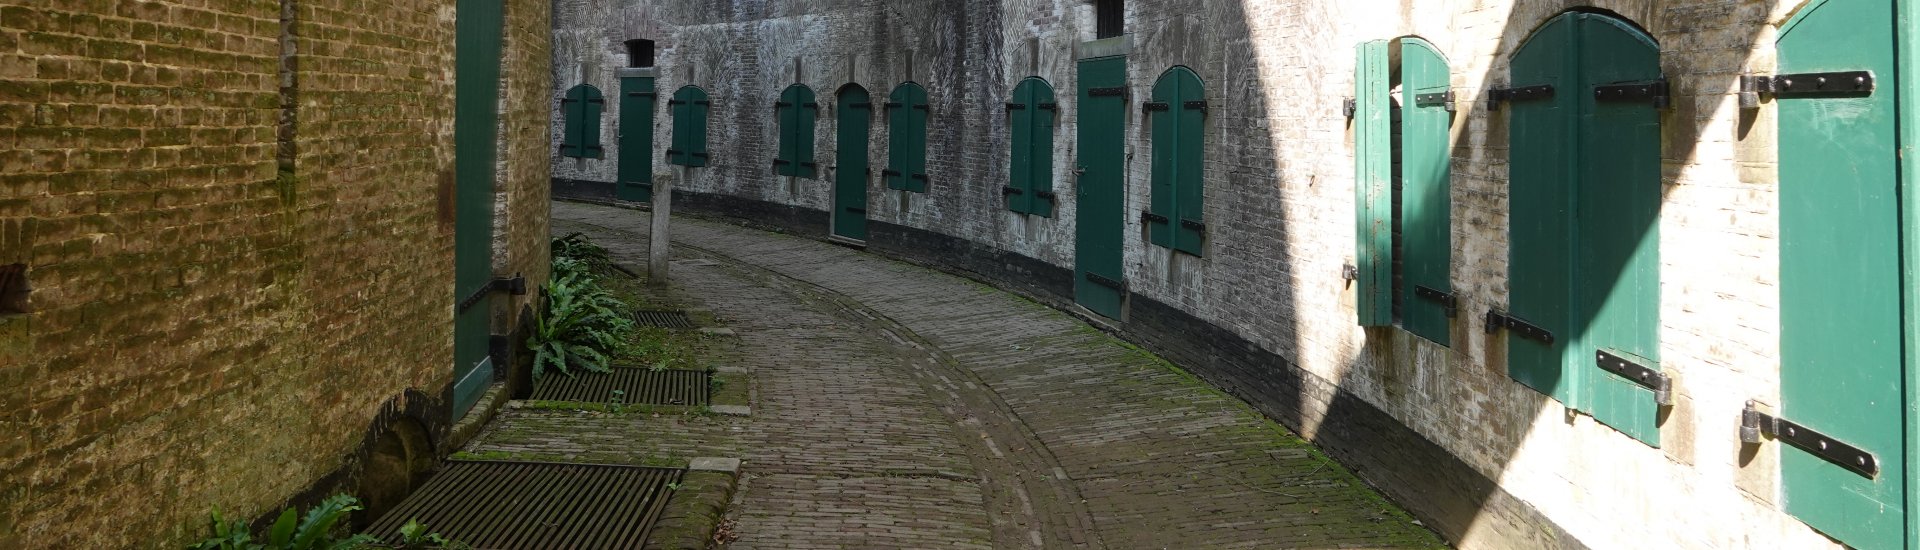 Fort Everdingen is onderdeel van werelderfgoedsite Hollandse Waterlinies.